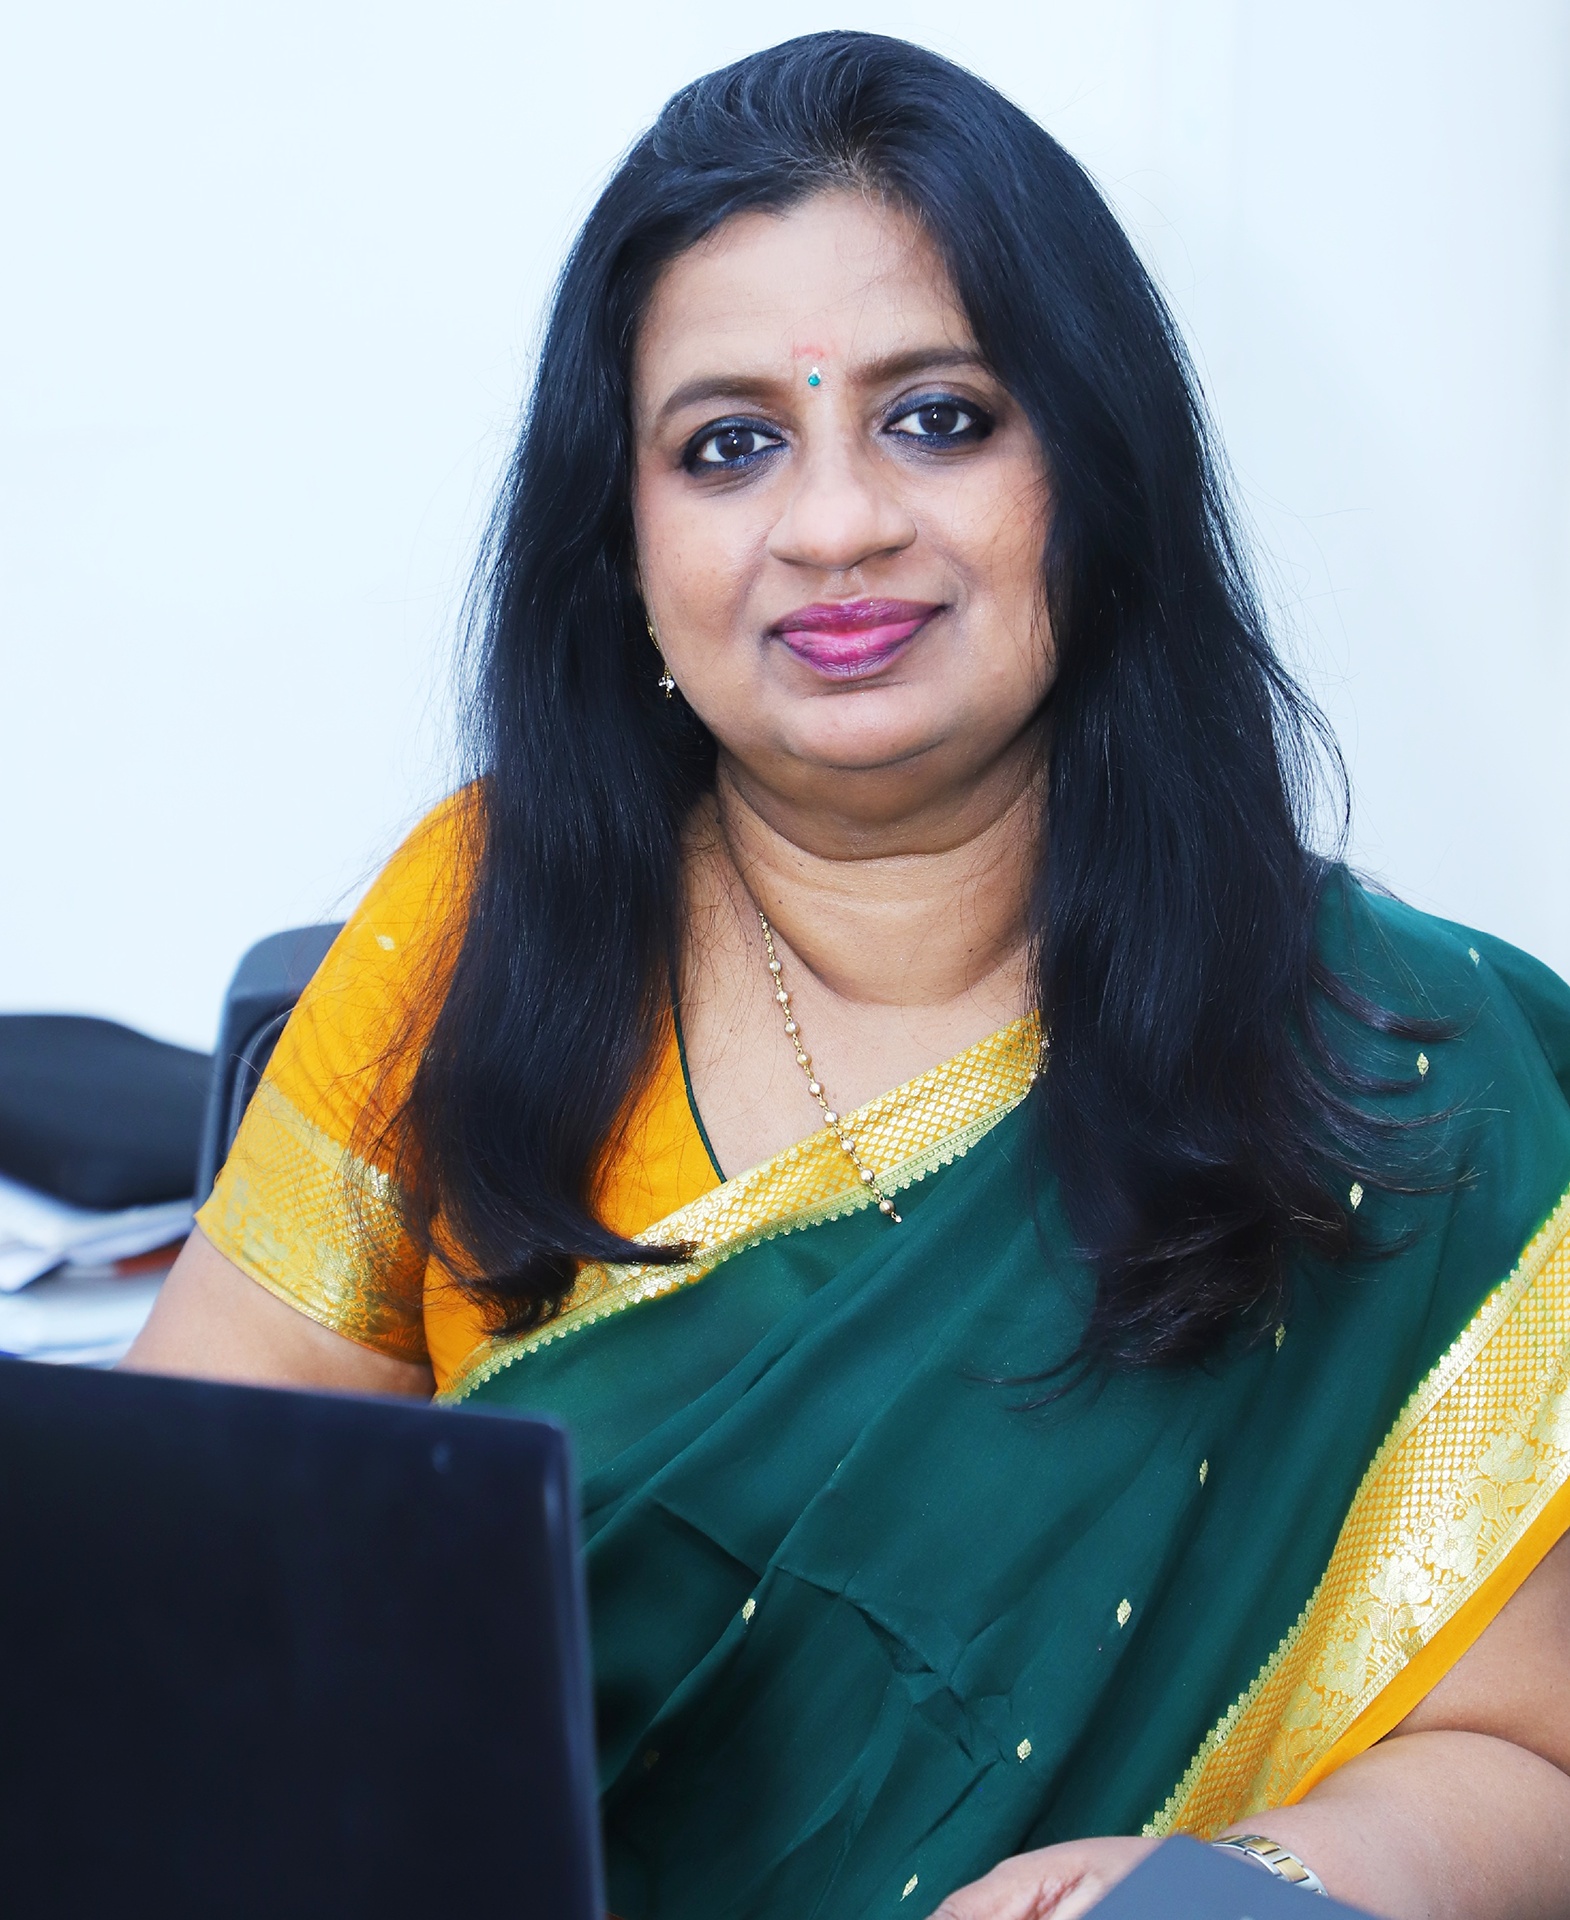 Dr. Preetha G. S., Professor at IIHMR Delhi